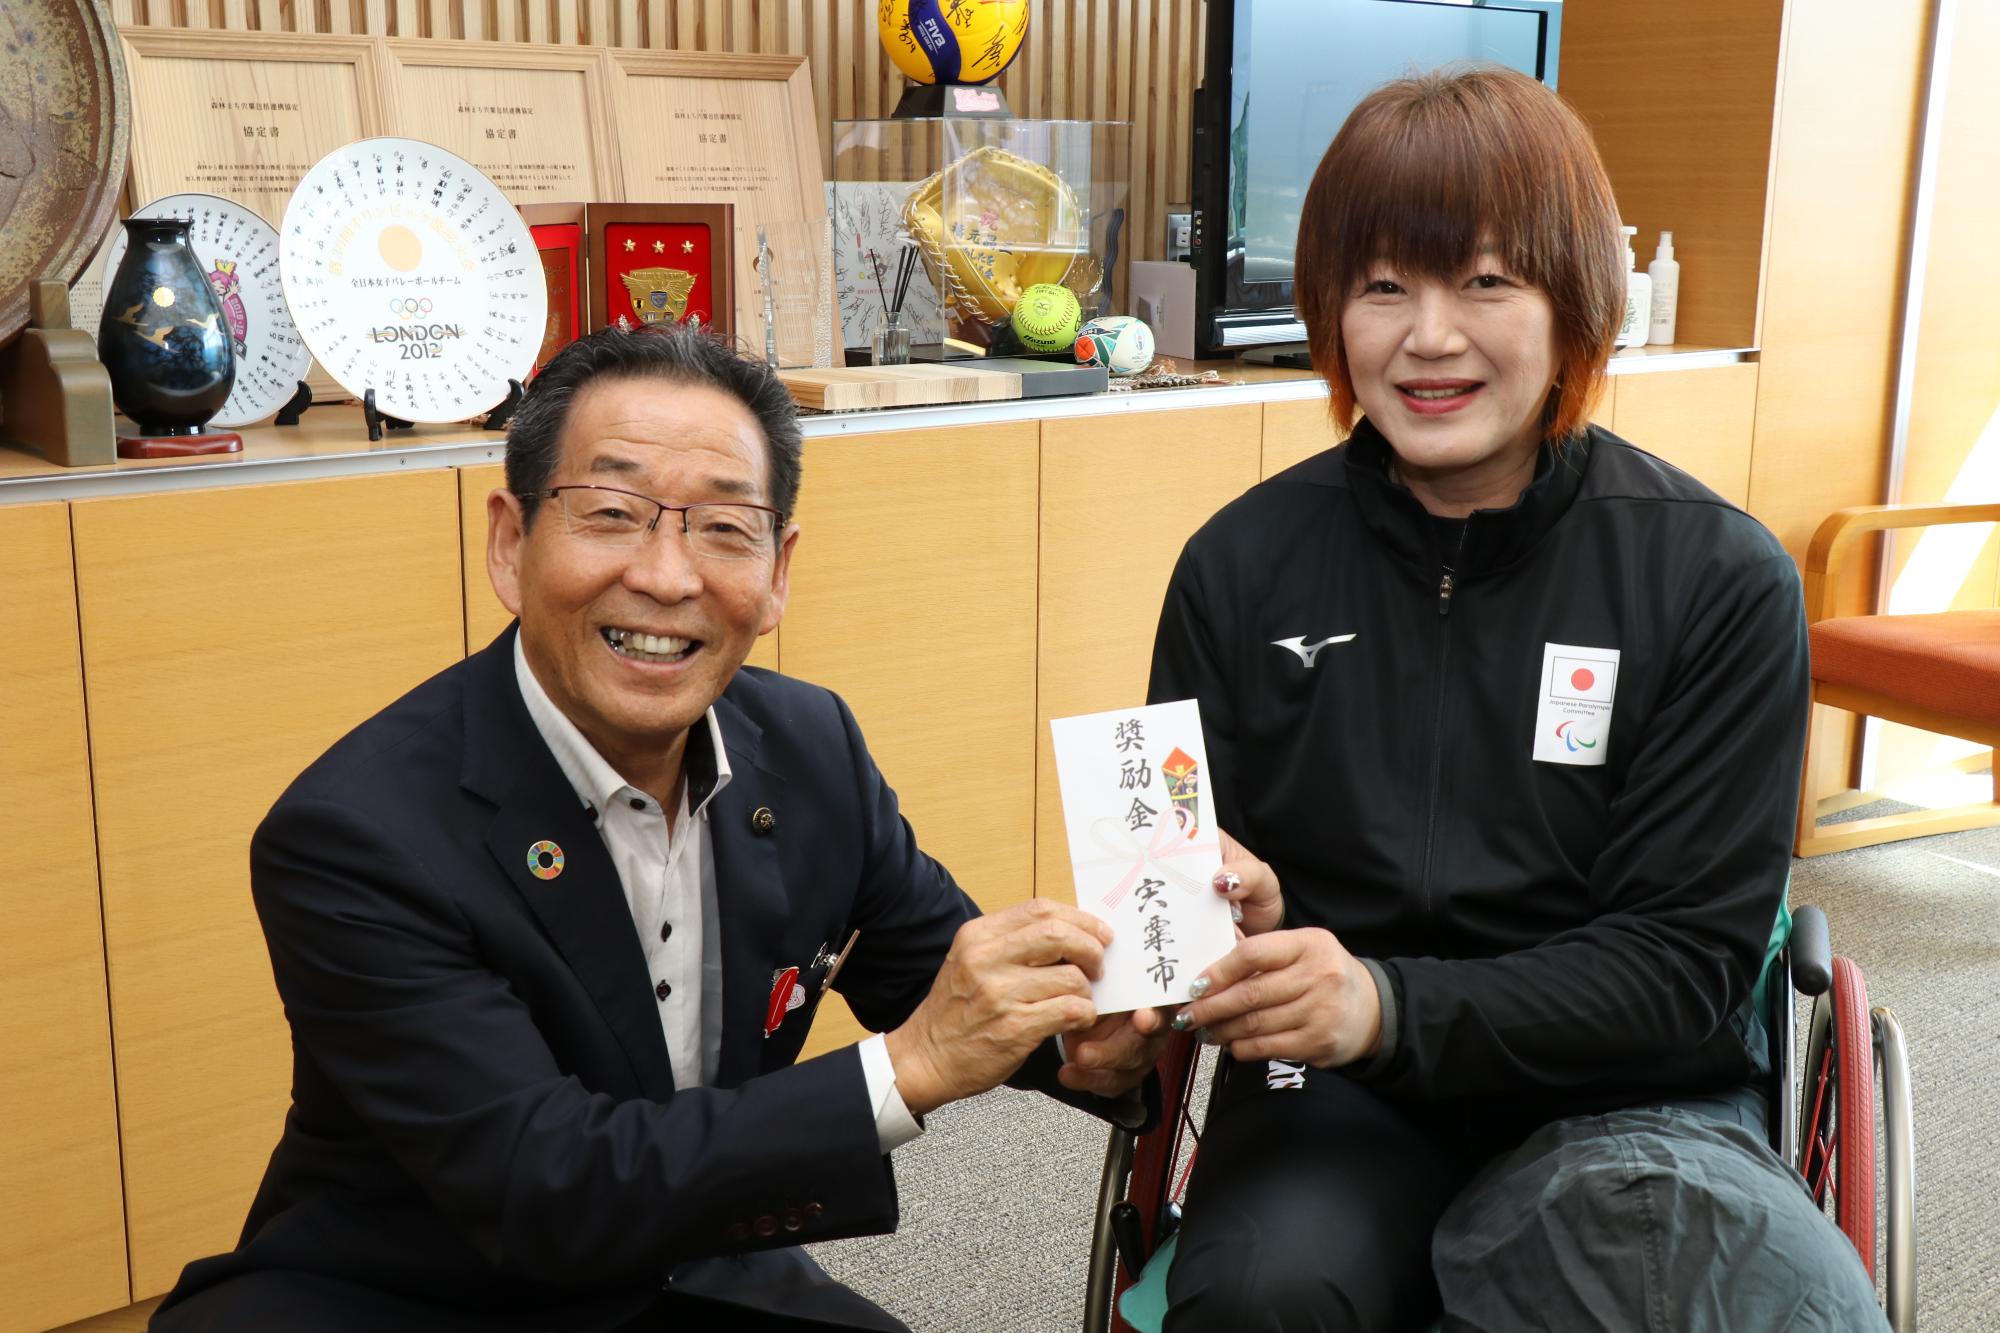 福元市長とアジパラ競技大会に出場される西家道代選手の写真